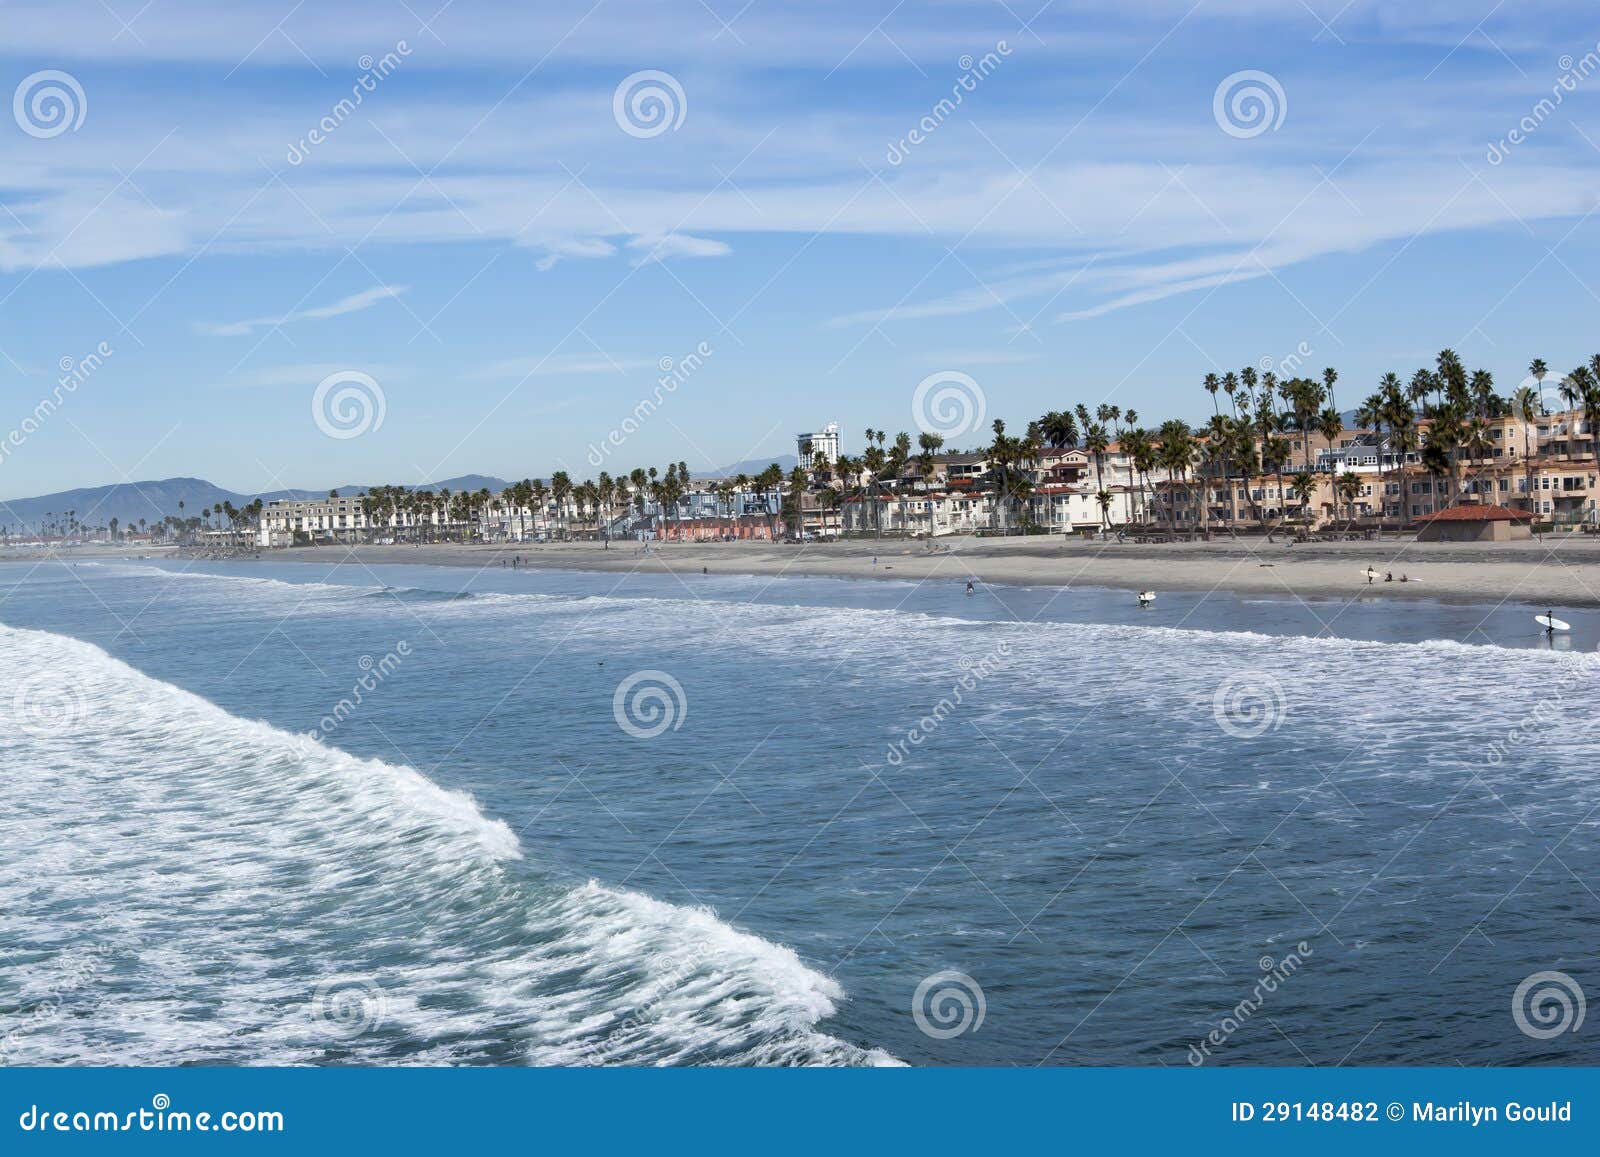 2,800+ Oceanside California Photos Stock Photos, Pictures